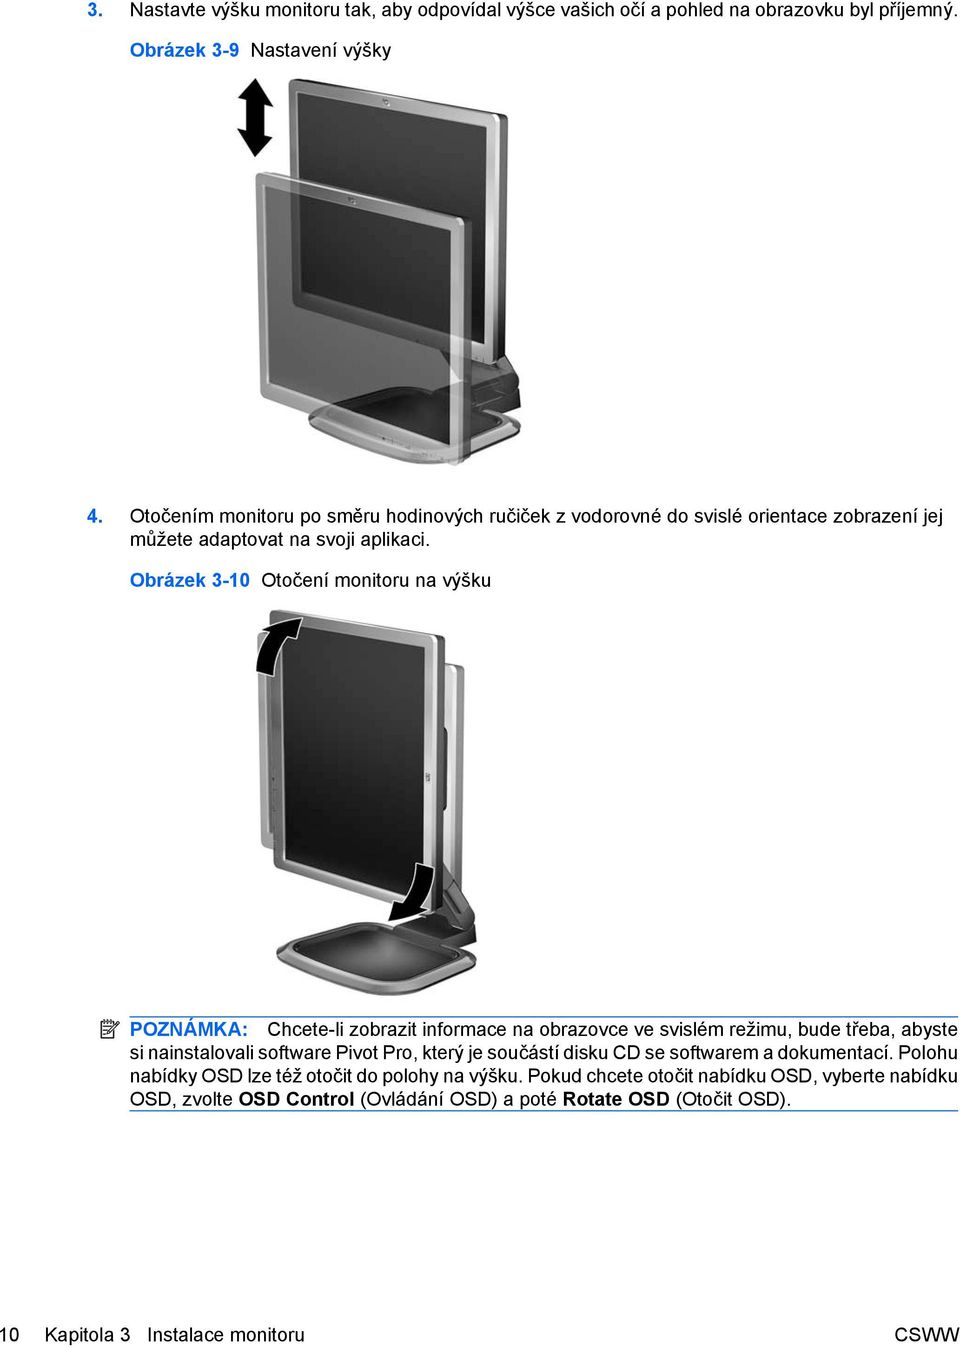 Obrázek 3-10 Otočení monitoru na výšku POZNÁMKA: Chcete-li zobrazit informace na obrazovce ve svislém režimu, bude třeba, abyste si nainstalovali software Pivot Pro, který